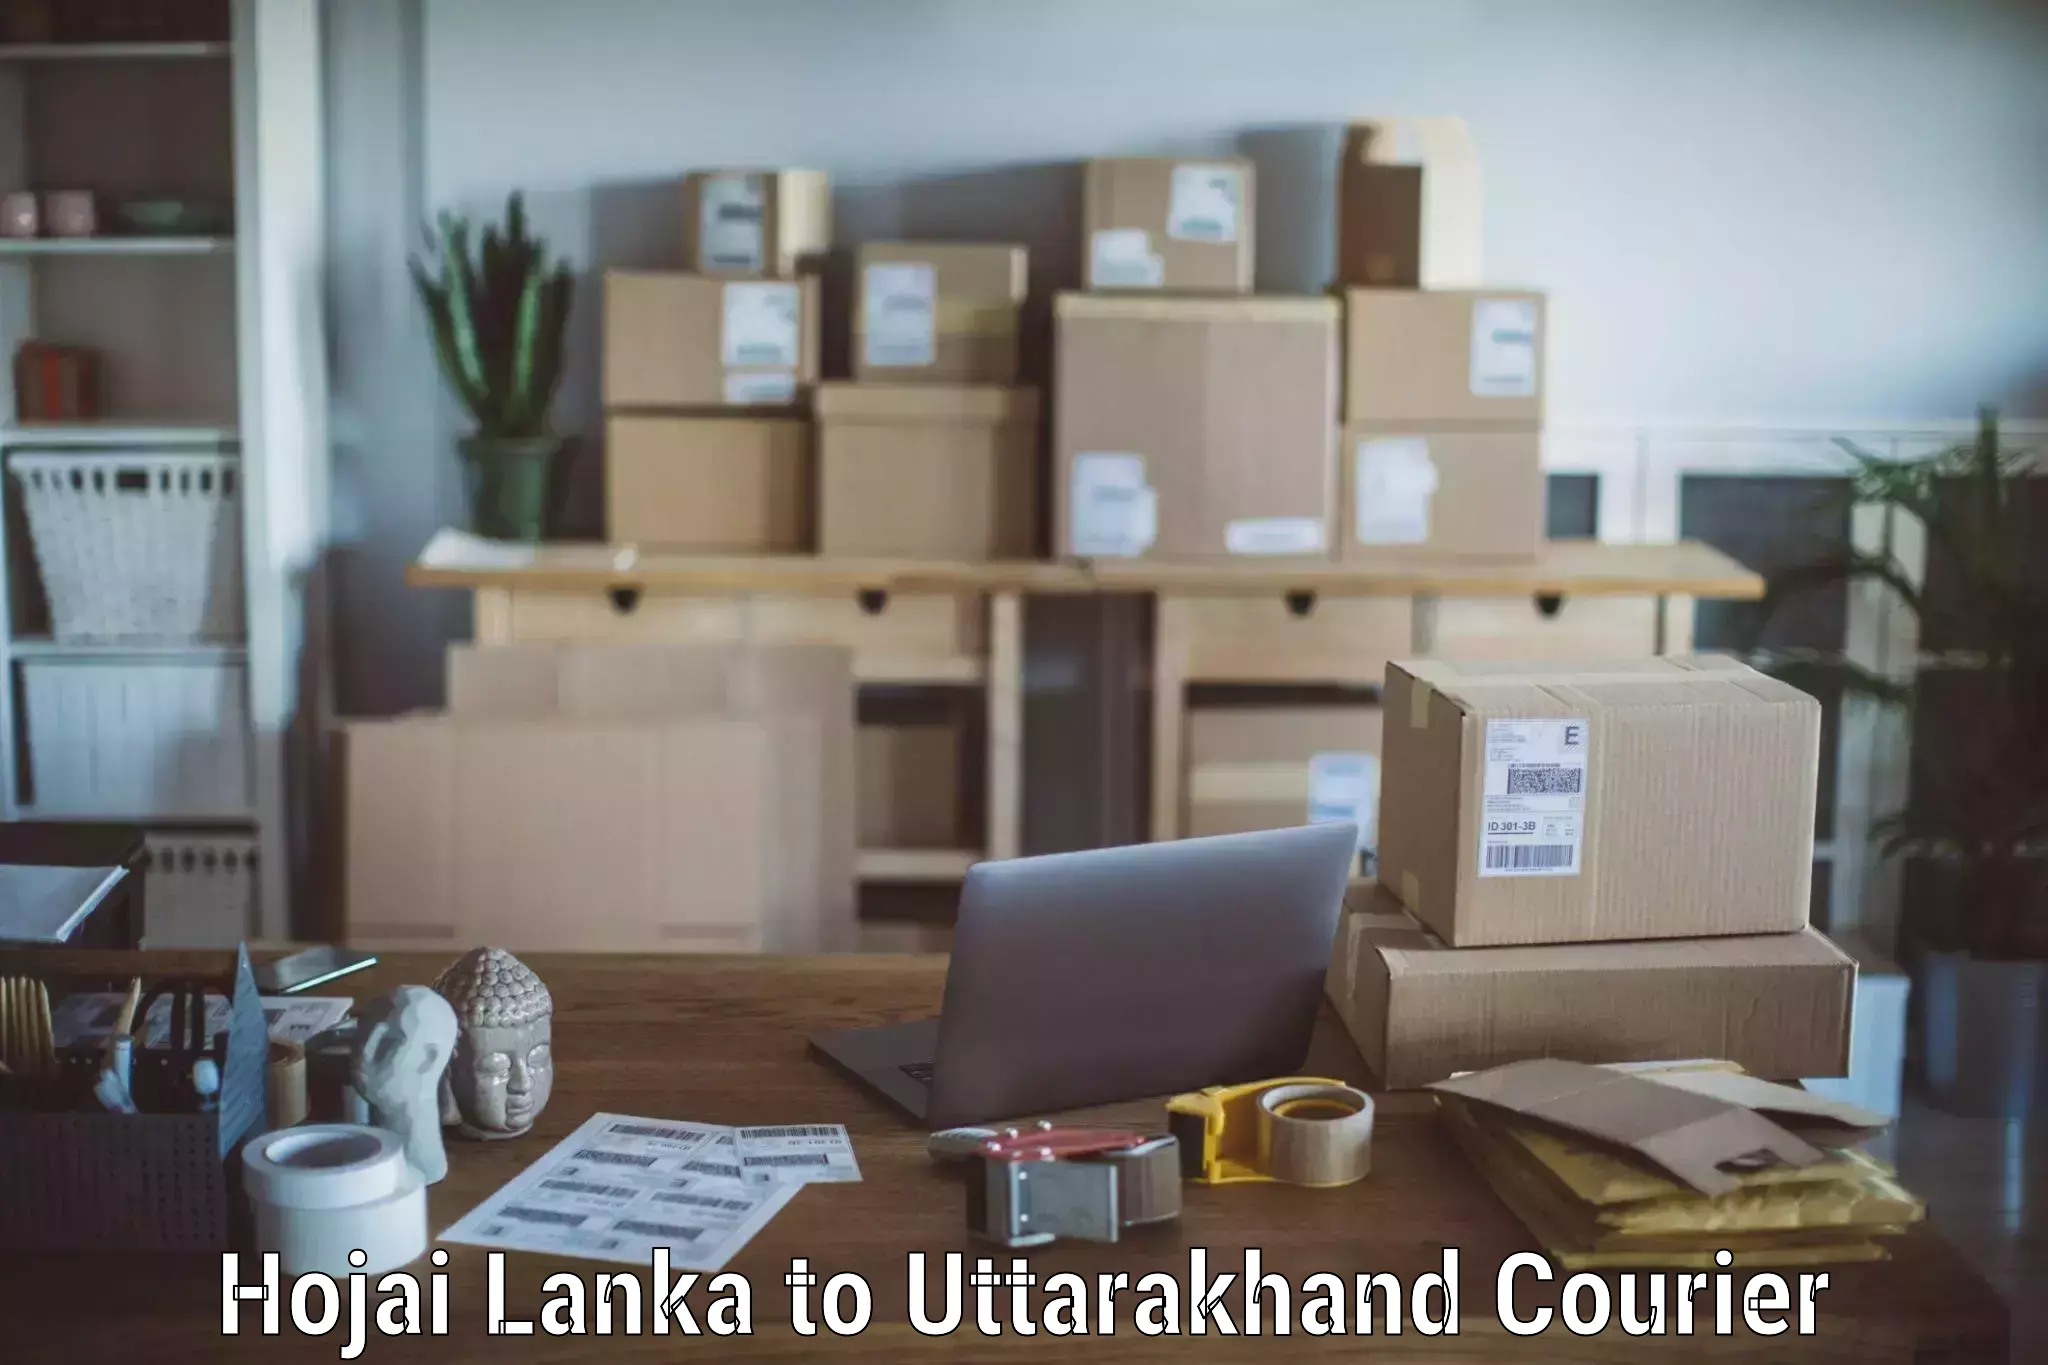 Residential moving experts Hojai Lanka to Lansdowne